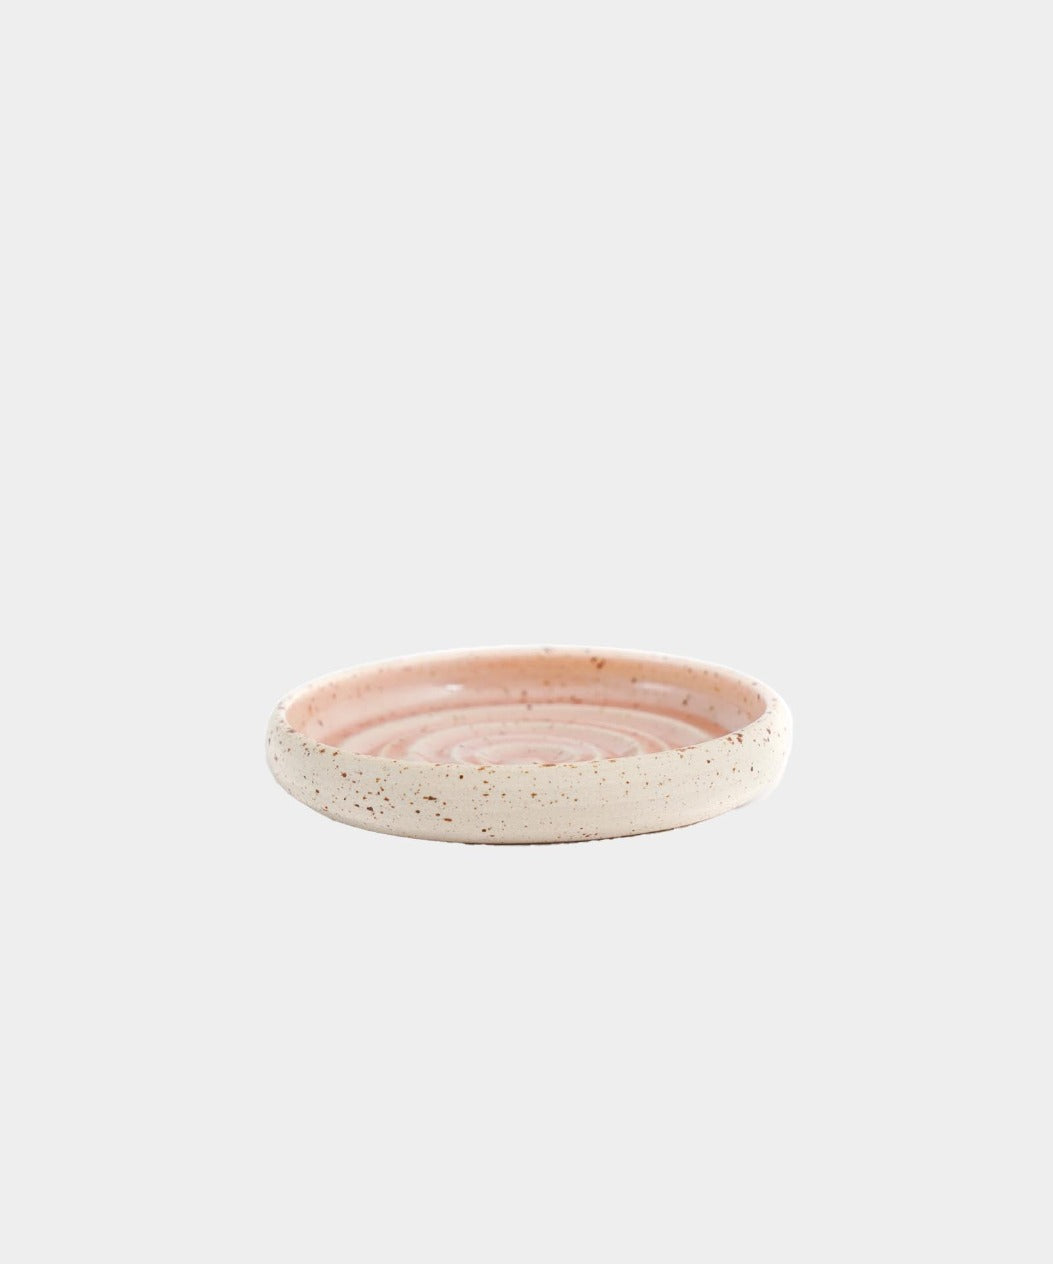 Håndlavet Keramik Sæbeskål | FLORAL by Vang | Kerama 1